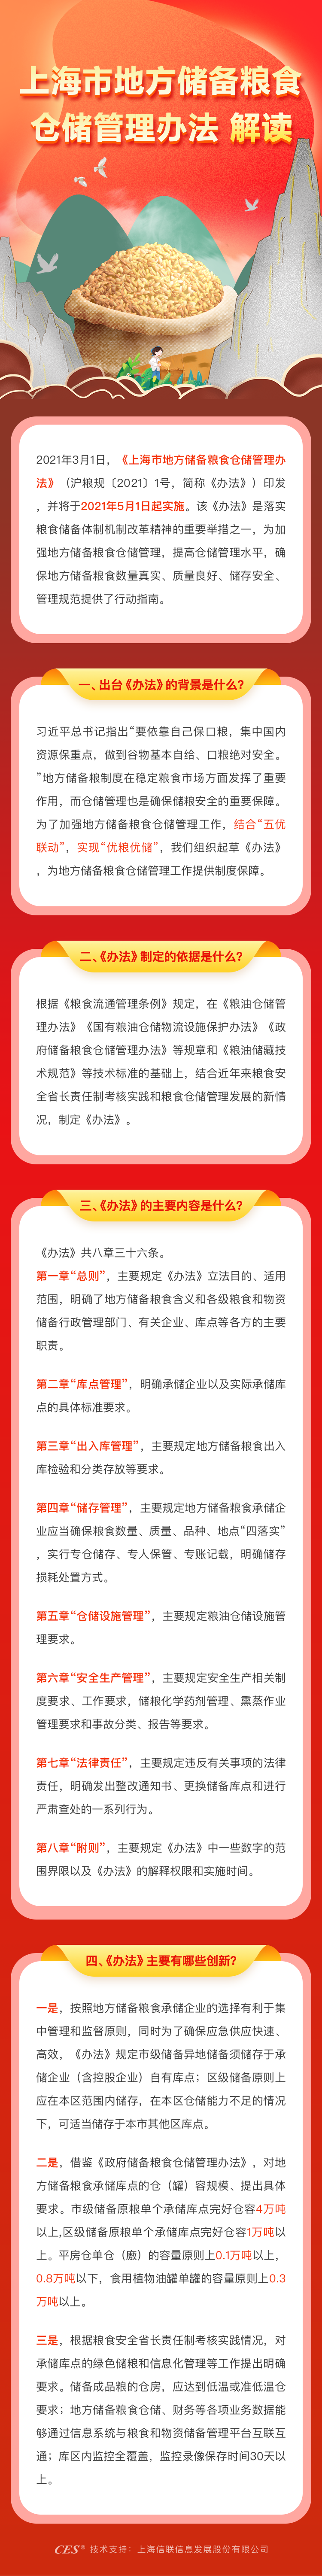 一图解读《上海市地方储备粮食仓储管理办法》.png